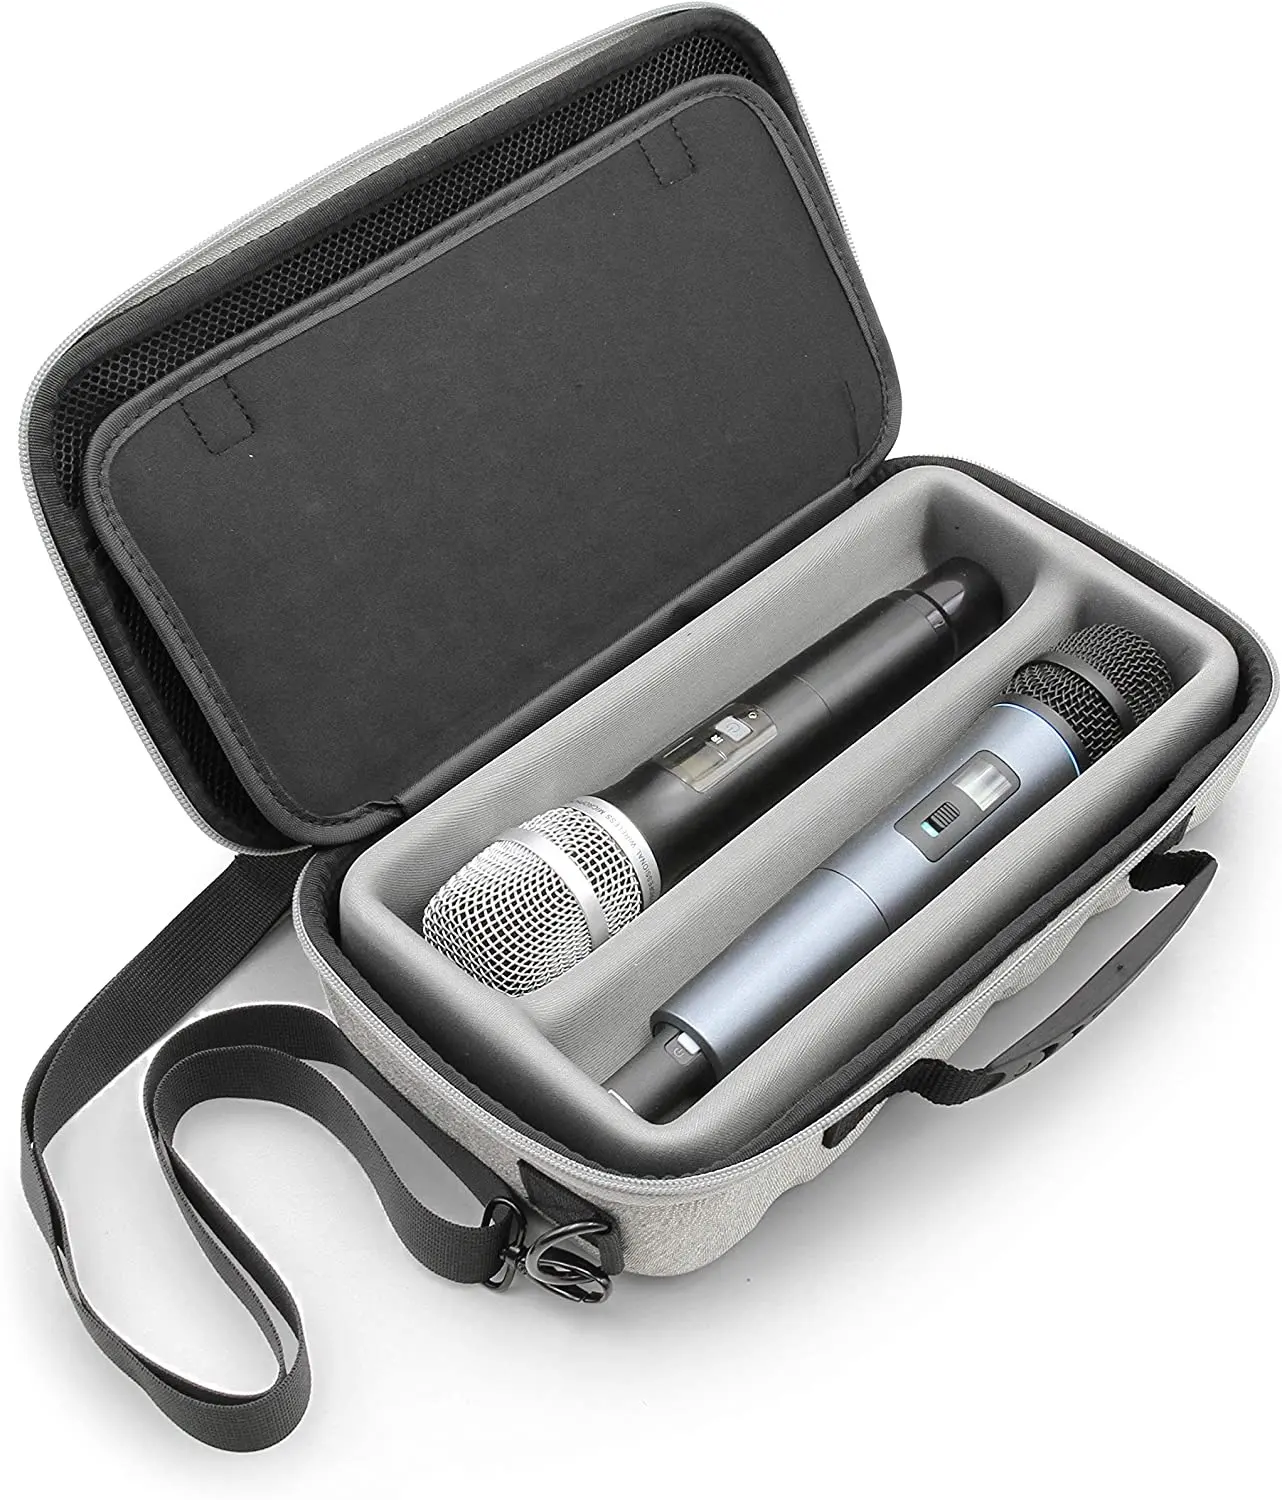 Eva Hard Case Draadloze Microfoon Case Voor Draadloze Microfoon Systeem Geschikt Voor Sennhesier Shure Microfoons